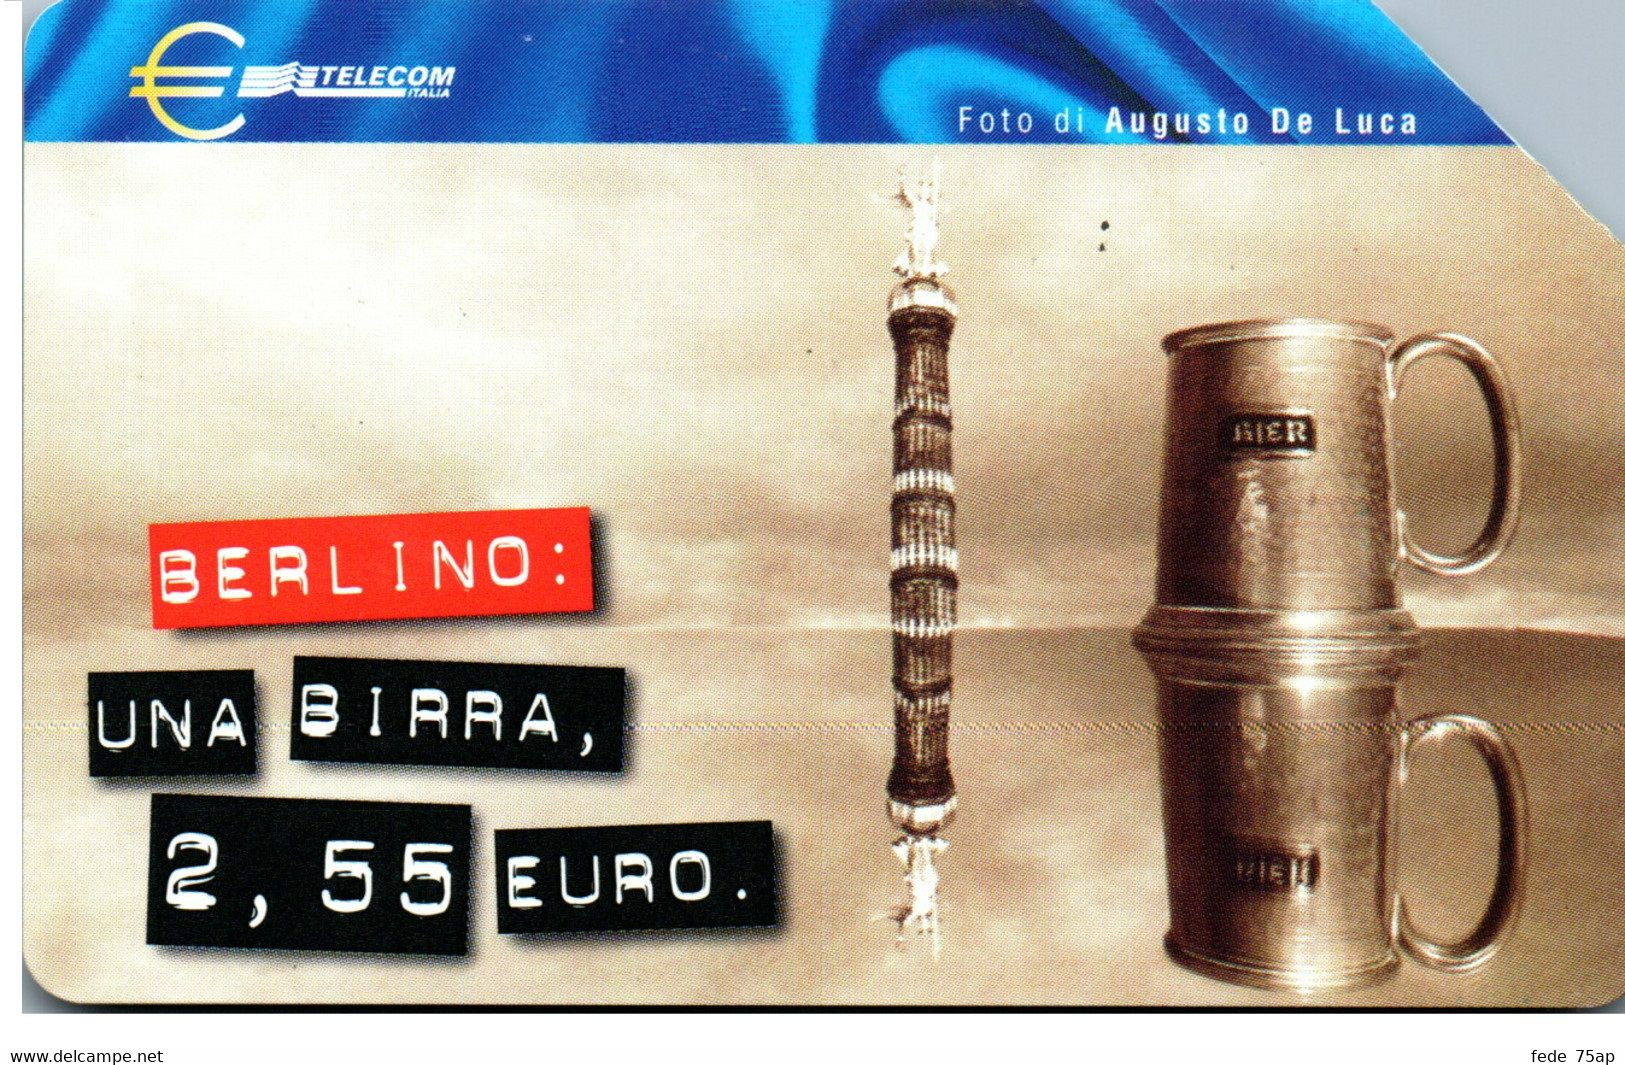 Scheda Telefonica TELECOM ITALIA "EURO - BERLINO" - Catalogo Golden Lira Nr. 1148, Usata - BOCCALE DI BIRRA - Food